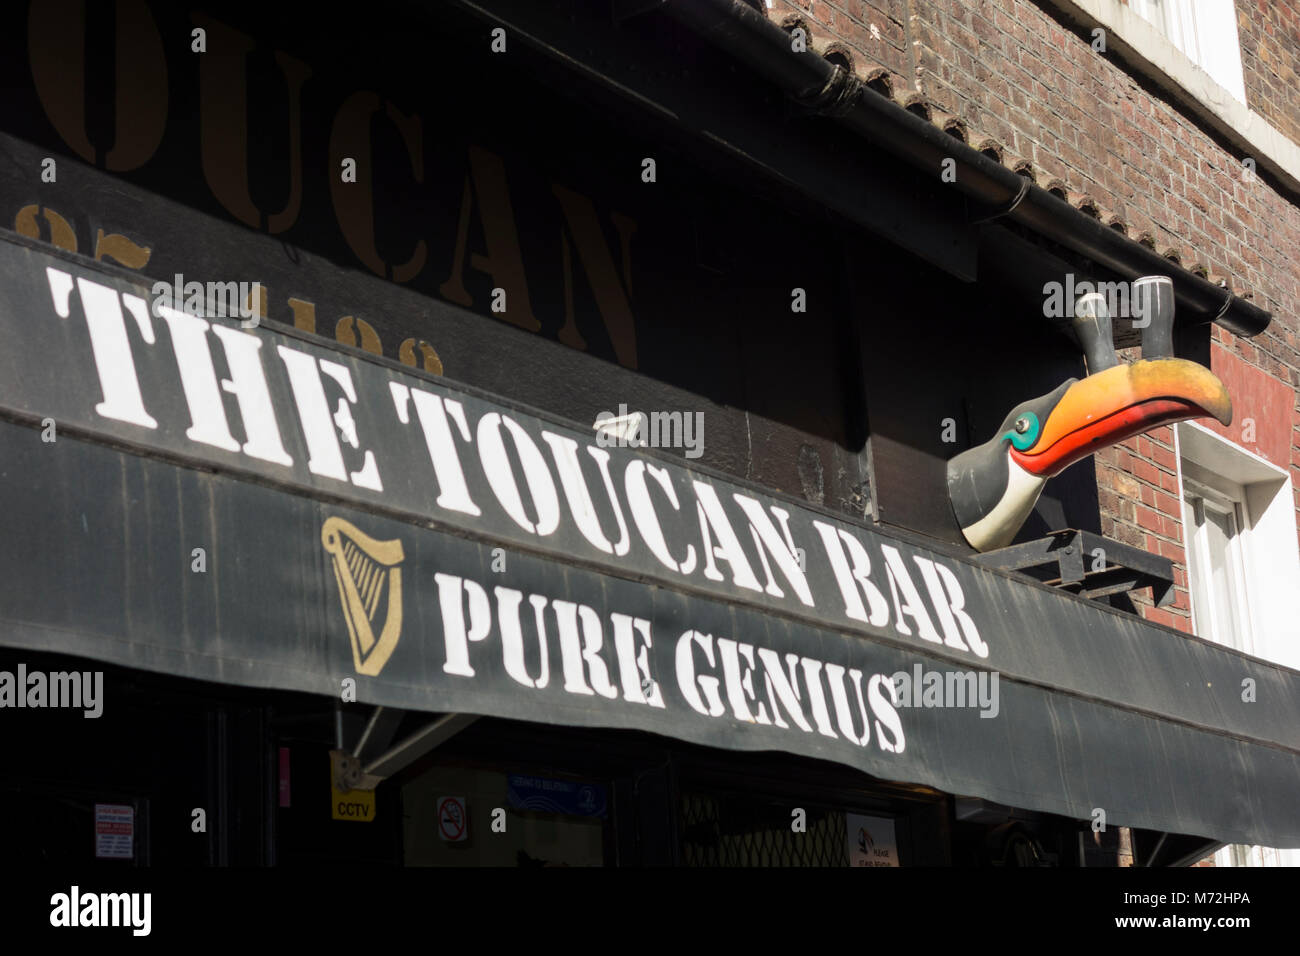 El Toucan Bar - Un puro genio Guinness pub temático en Carlisle Street, London W1 Foto de stock